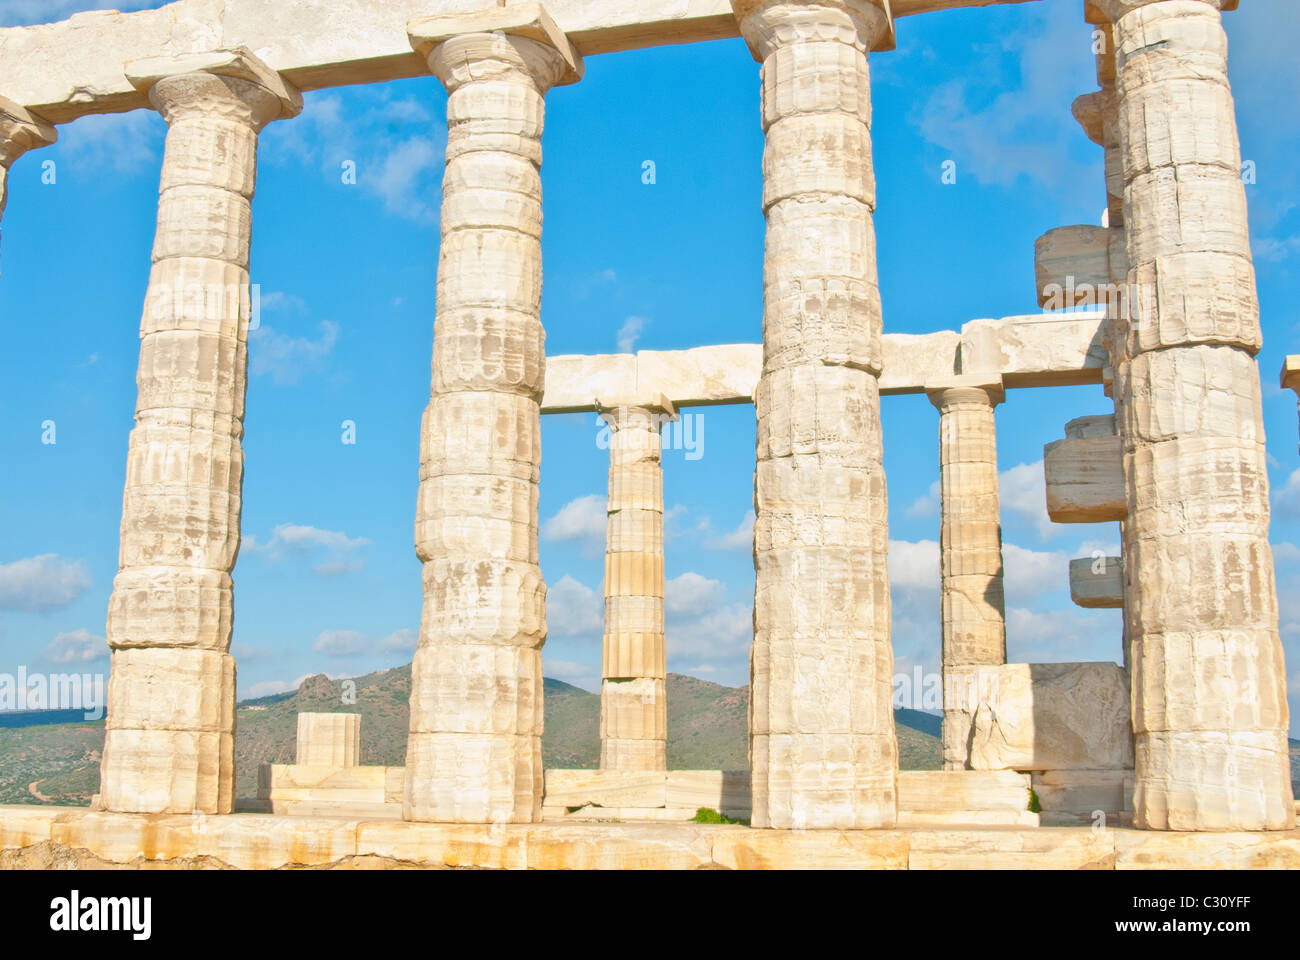 Cap Sounion est à noter que le site des ruines d'un ancien temple grec de Poséidon, le dieu de la mer dans la mythologie classique. Banque D'Images